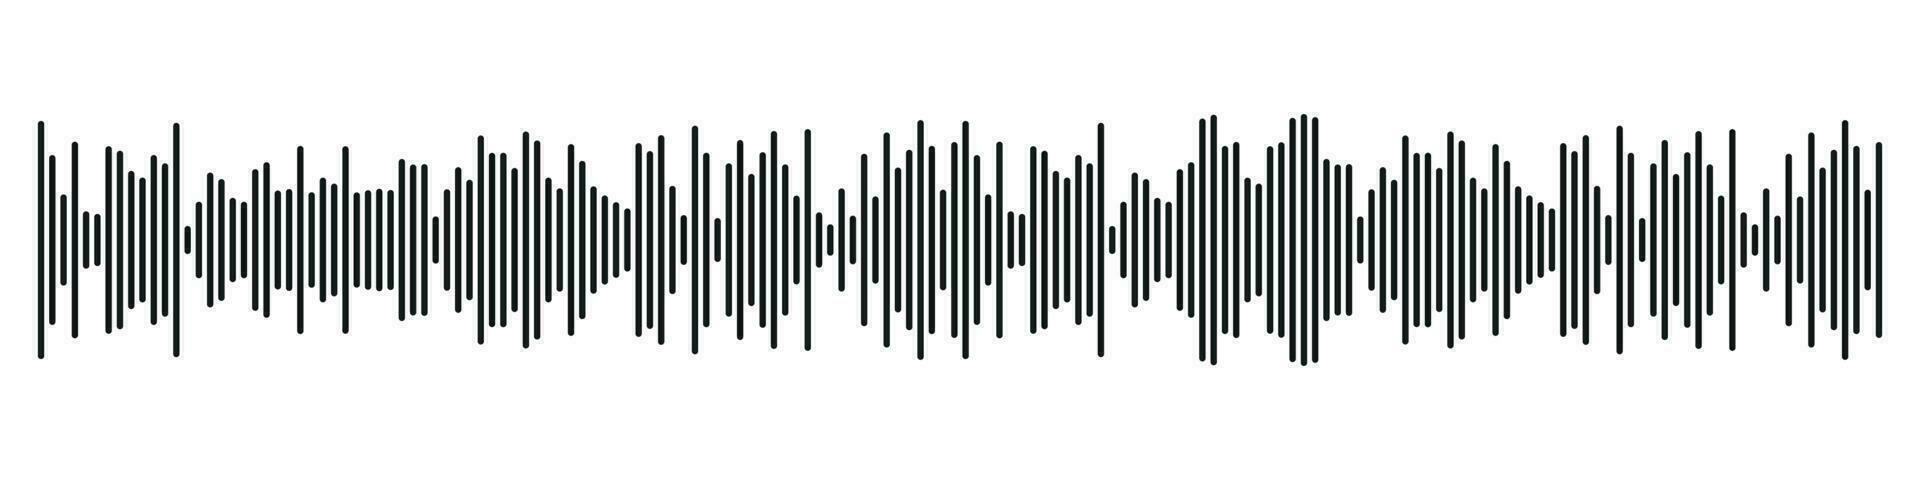 suono Radio modulo. astratto musica Audio onda sonora. vettore isolato illustrazione